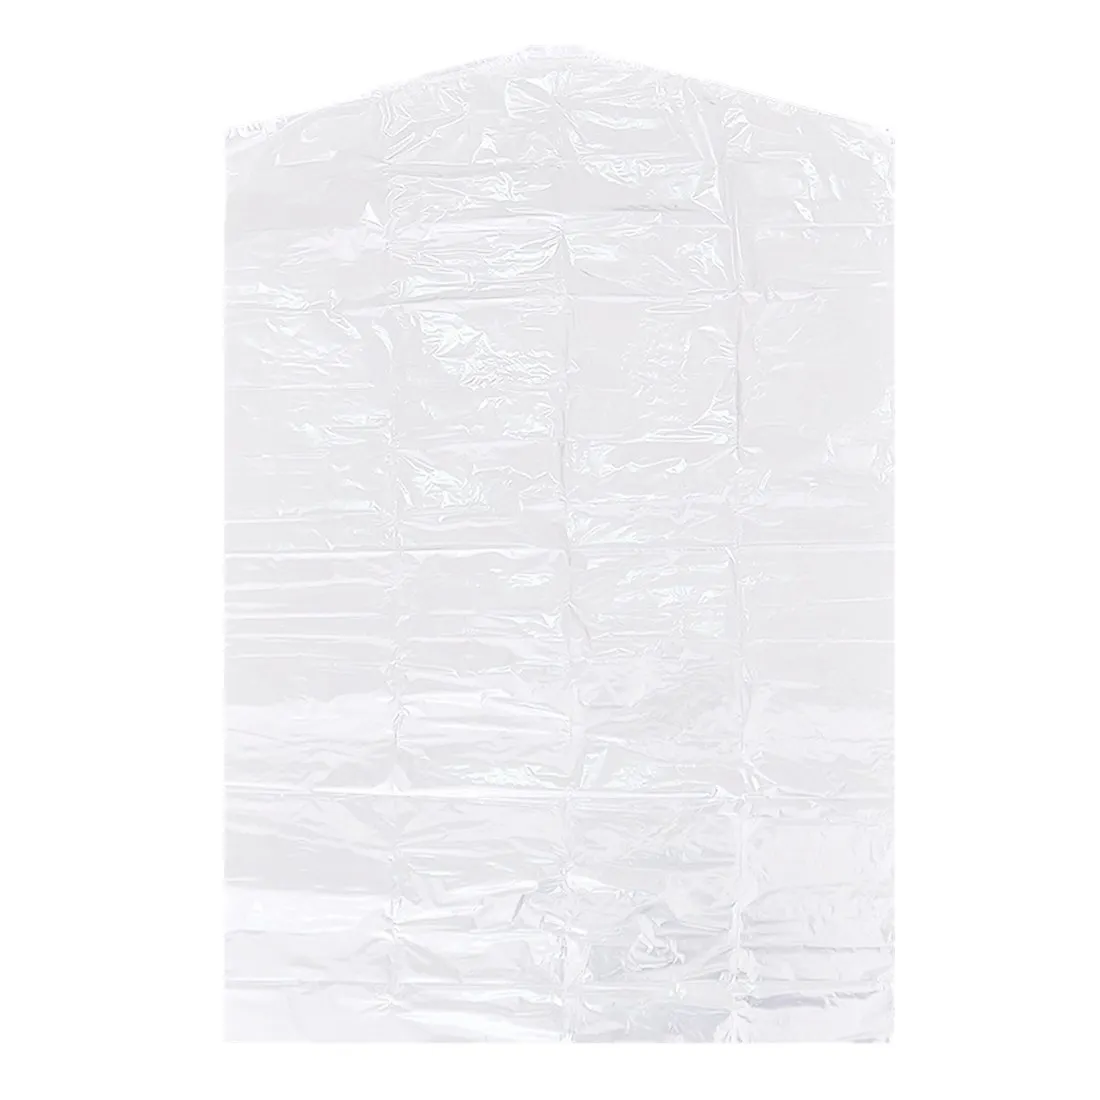 5 шт. полезный Пыленепроницаемый Чехол для одежды костюм/платье сумка для хранения одежды протектор